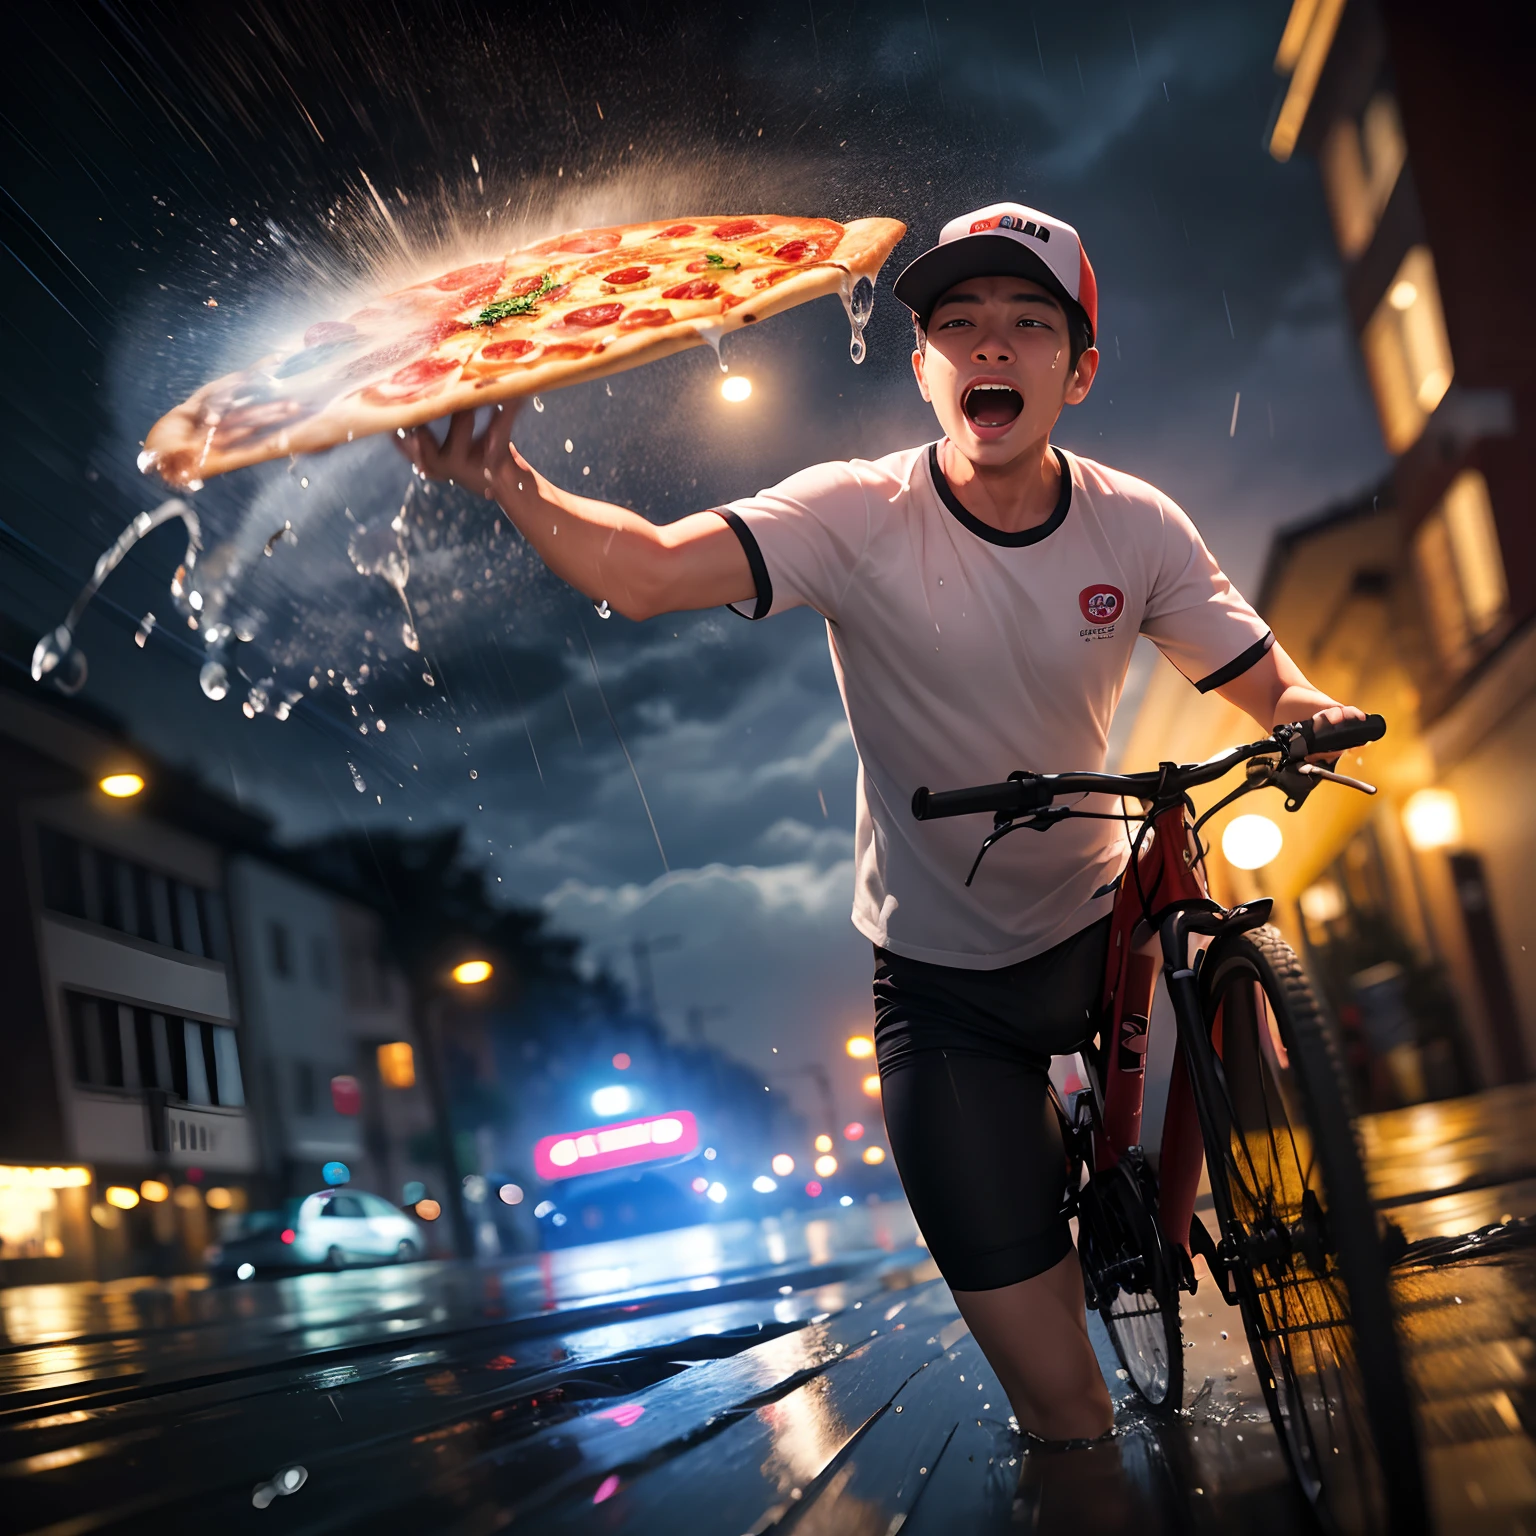 关注披萨送货员, 爆头, 骑自行车, 尖叫, 倾盆大雨, 暴风雨的, 台风, 午夜, 从正面, 运动模糊, 镜头上的水珠, 水溅, 顶级品质